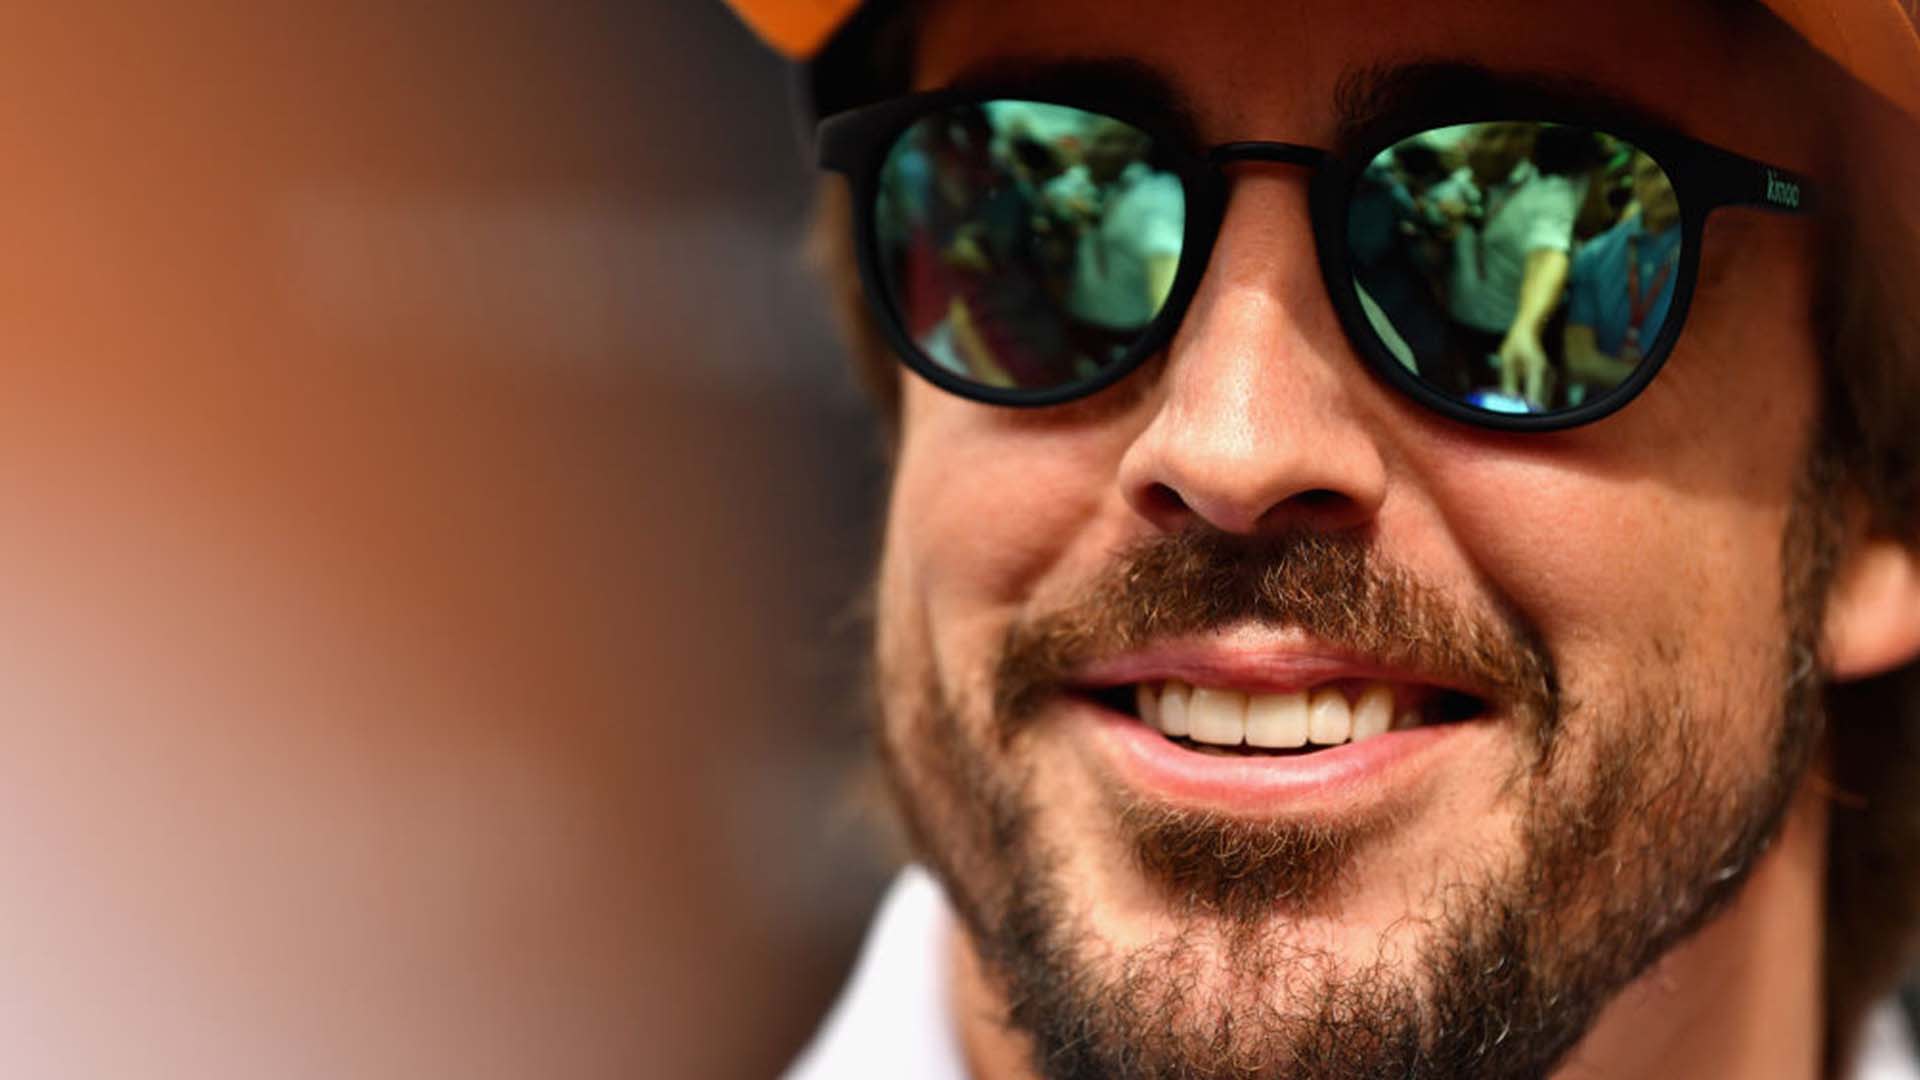 Fernando Alonso is back: Renault confirm Formula 1 return for 2021, F1  News